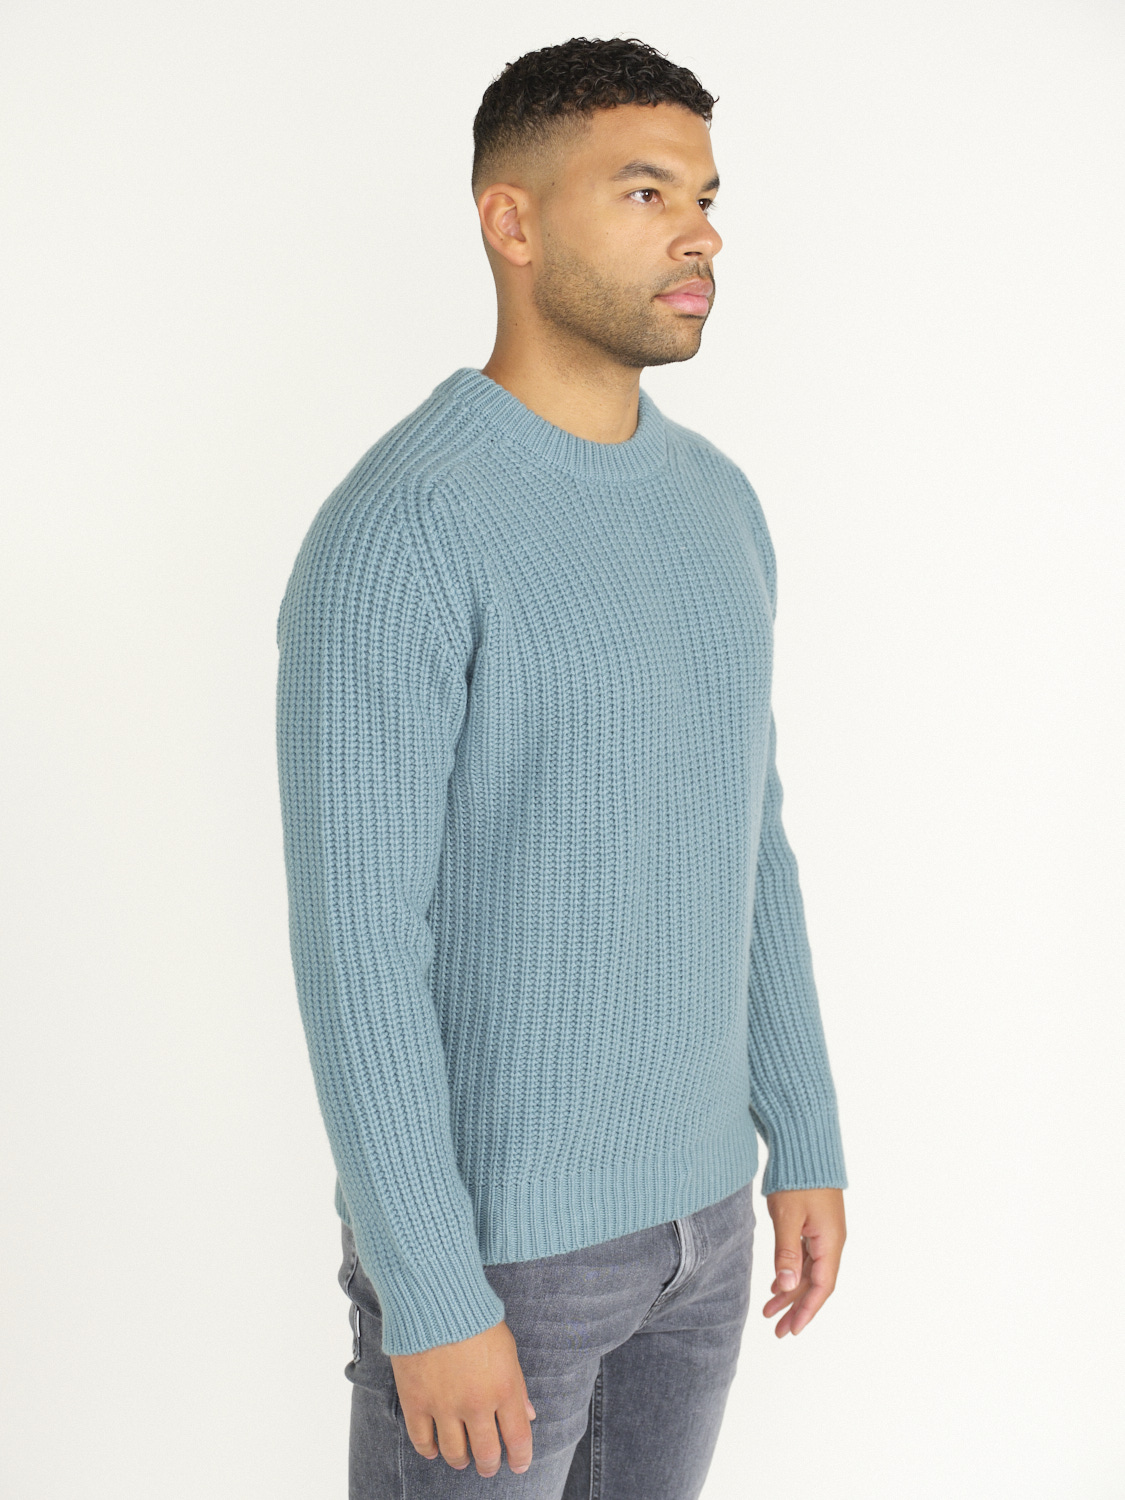 Stephan Boya Mood Rib Sweater - Rib knit sweater blue L